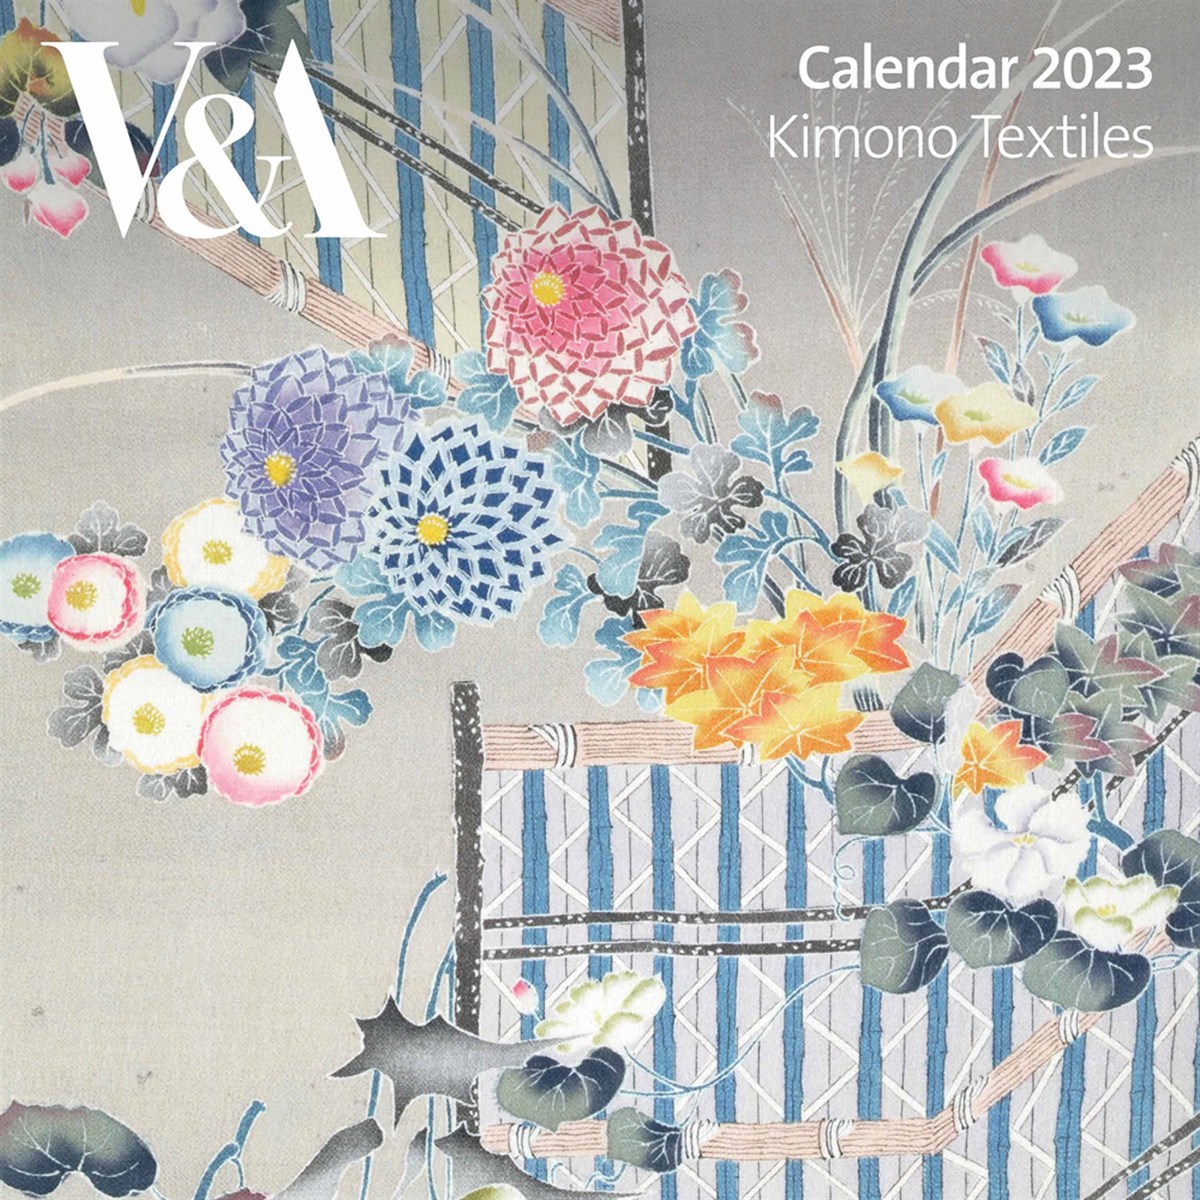 V&A, Kimono Textiles 2023 Calendars